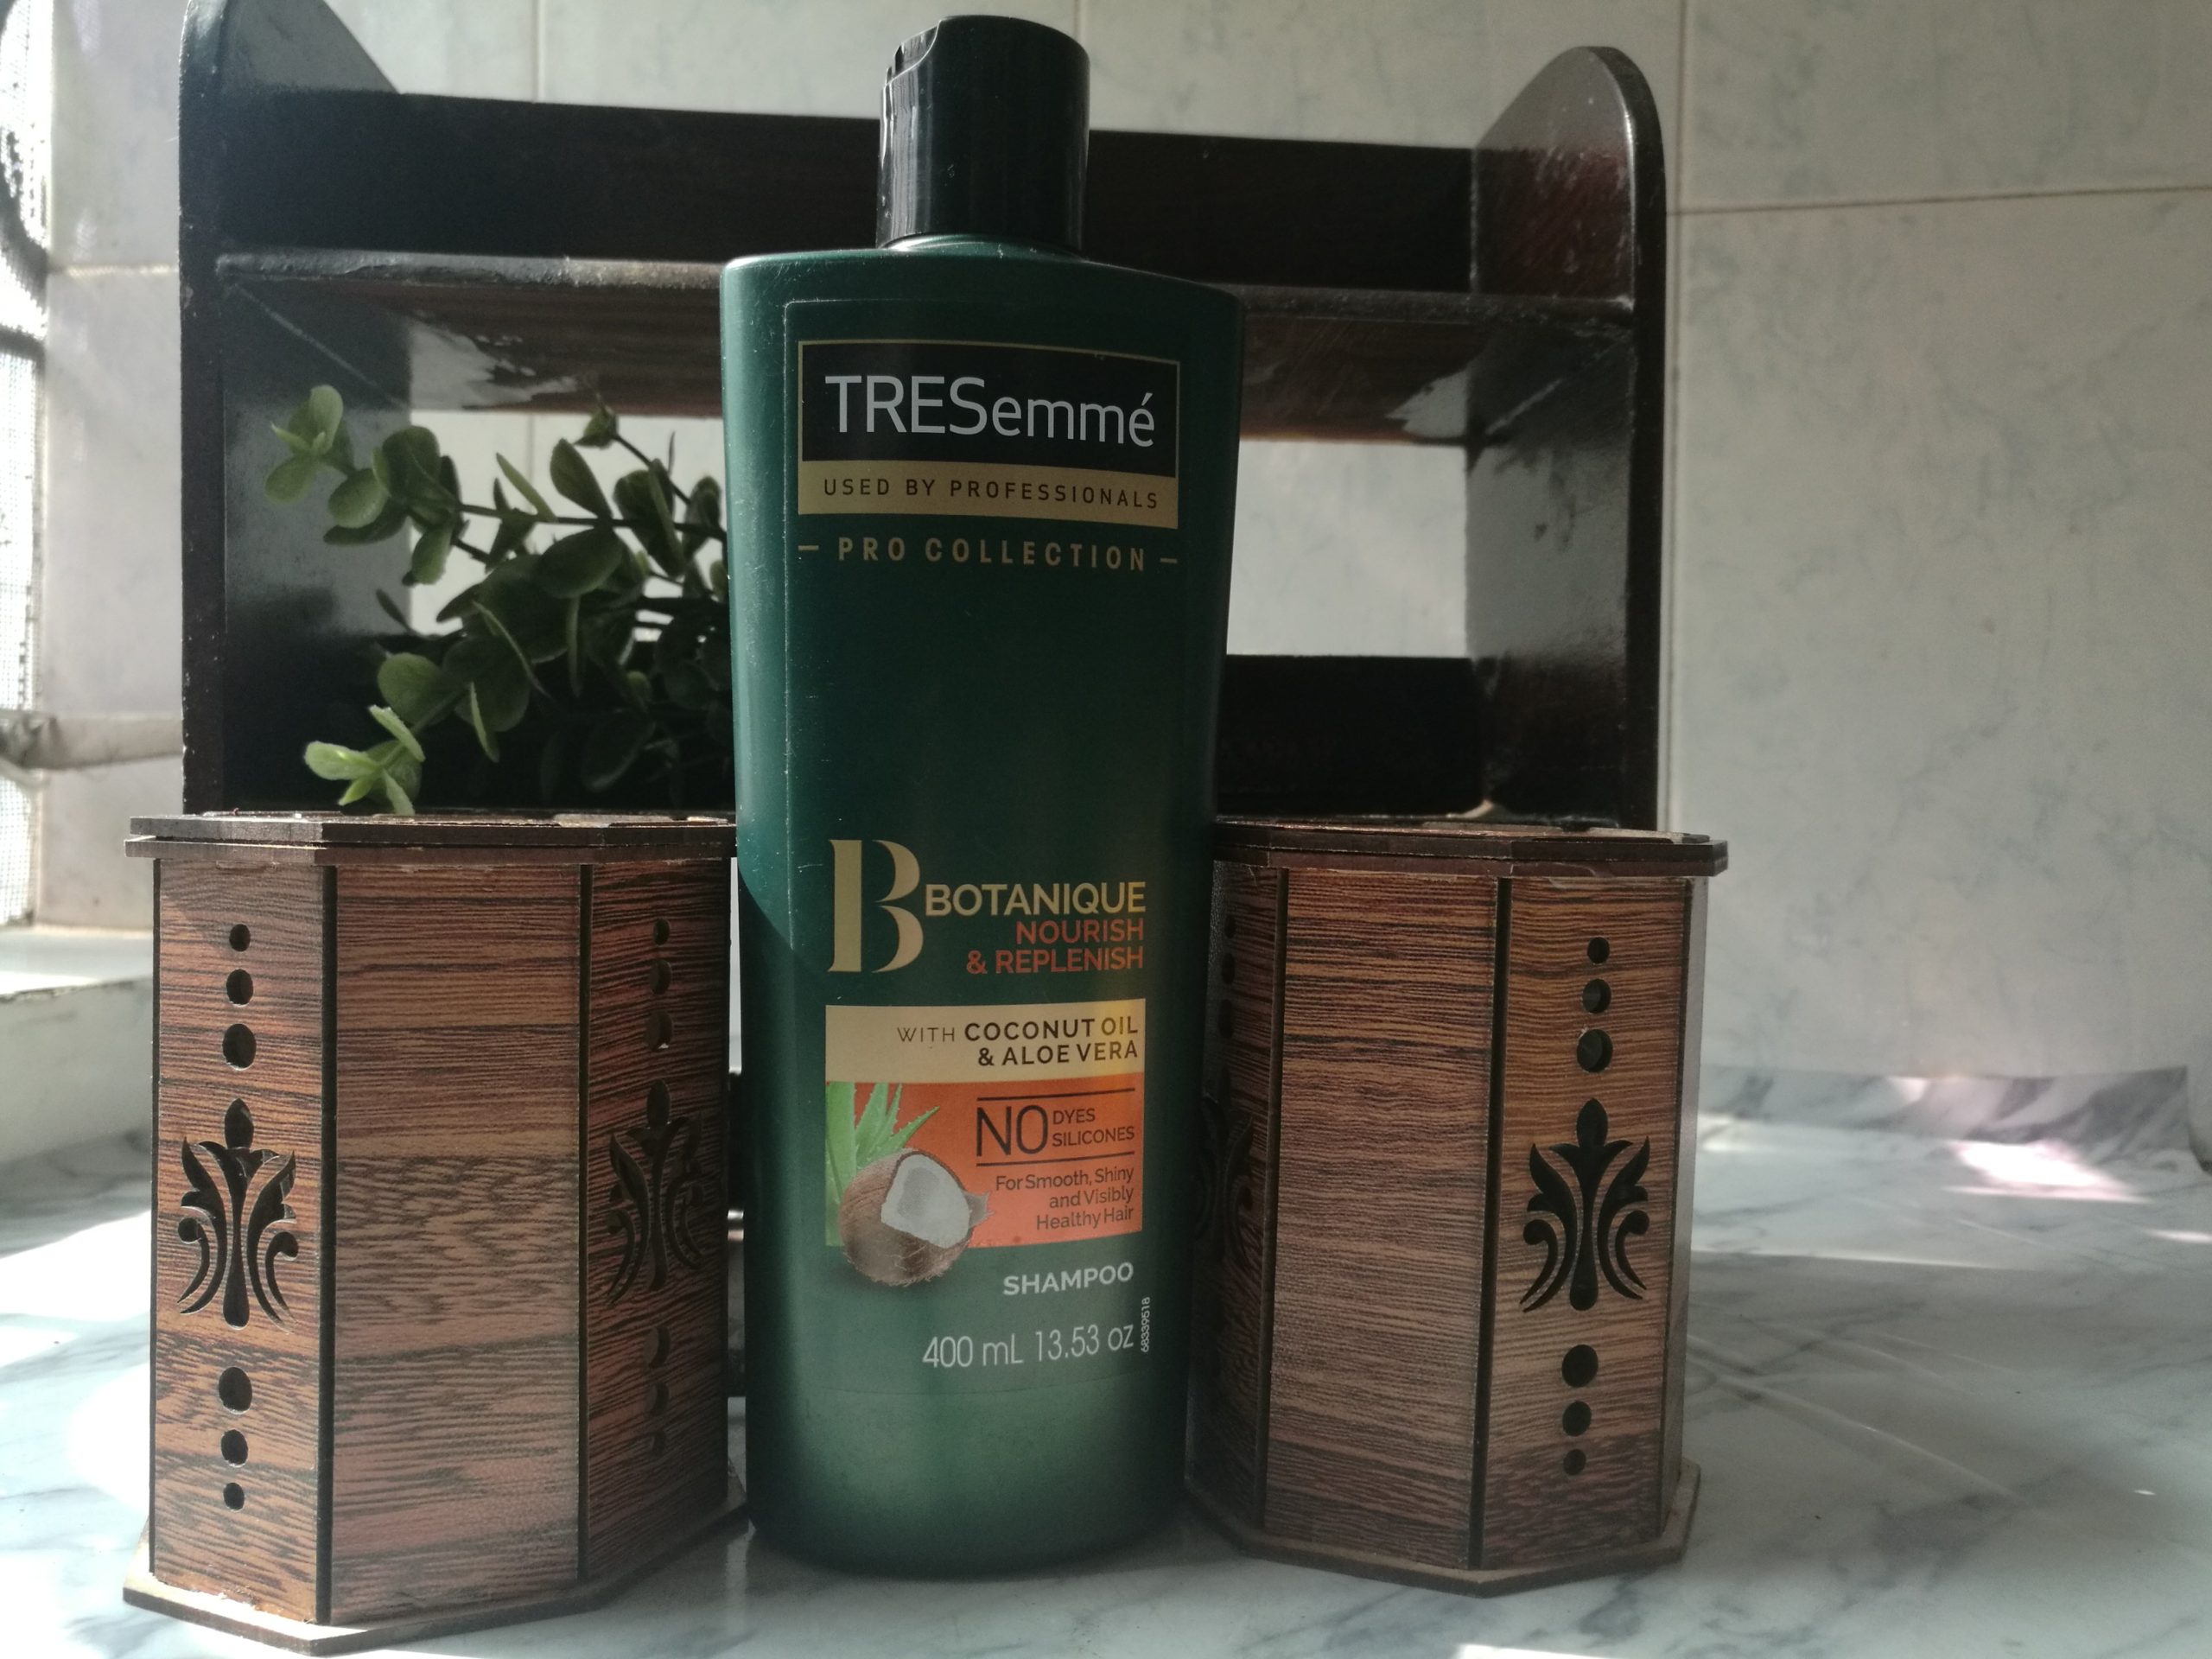 Tresemme Botanique Shampoo Review